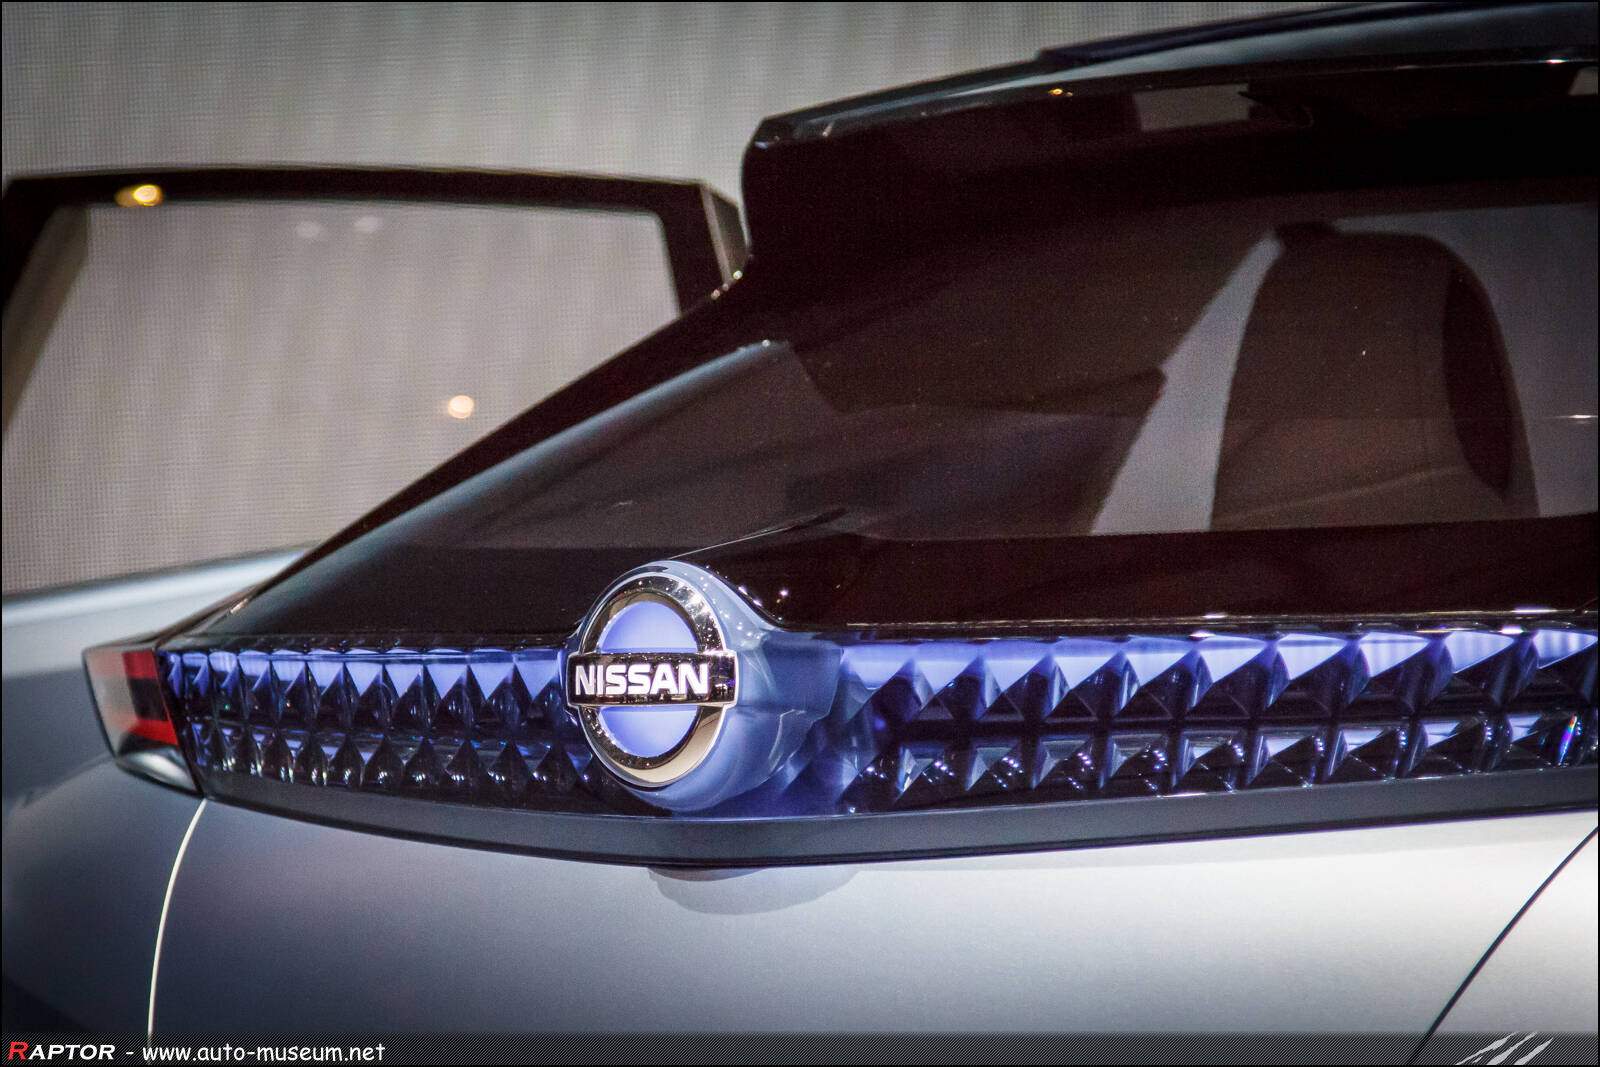 Nissan IDS Concept (2015),  ajouté par Raptor